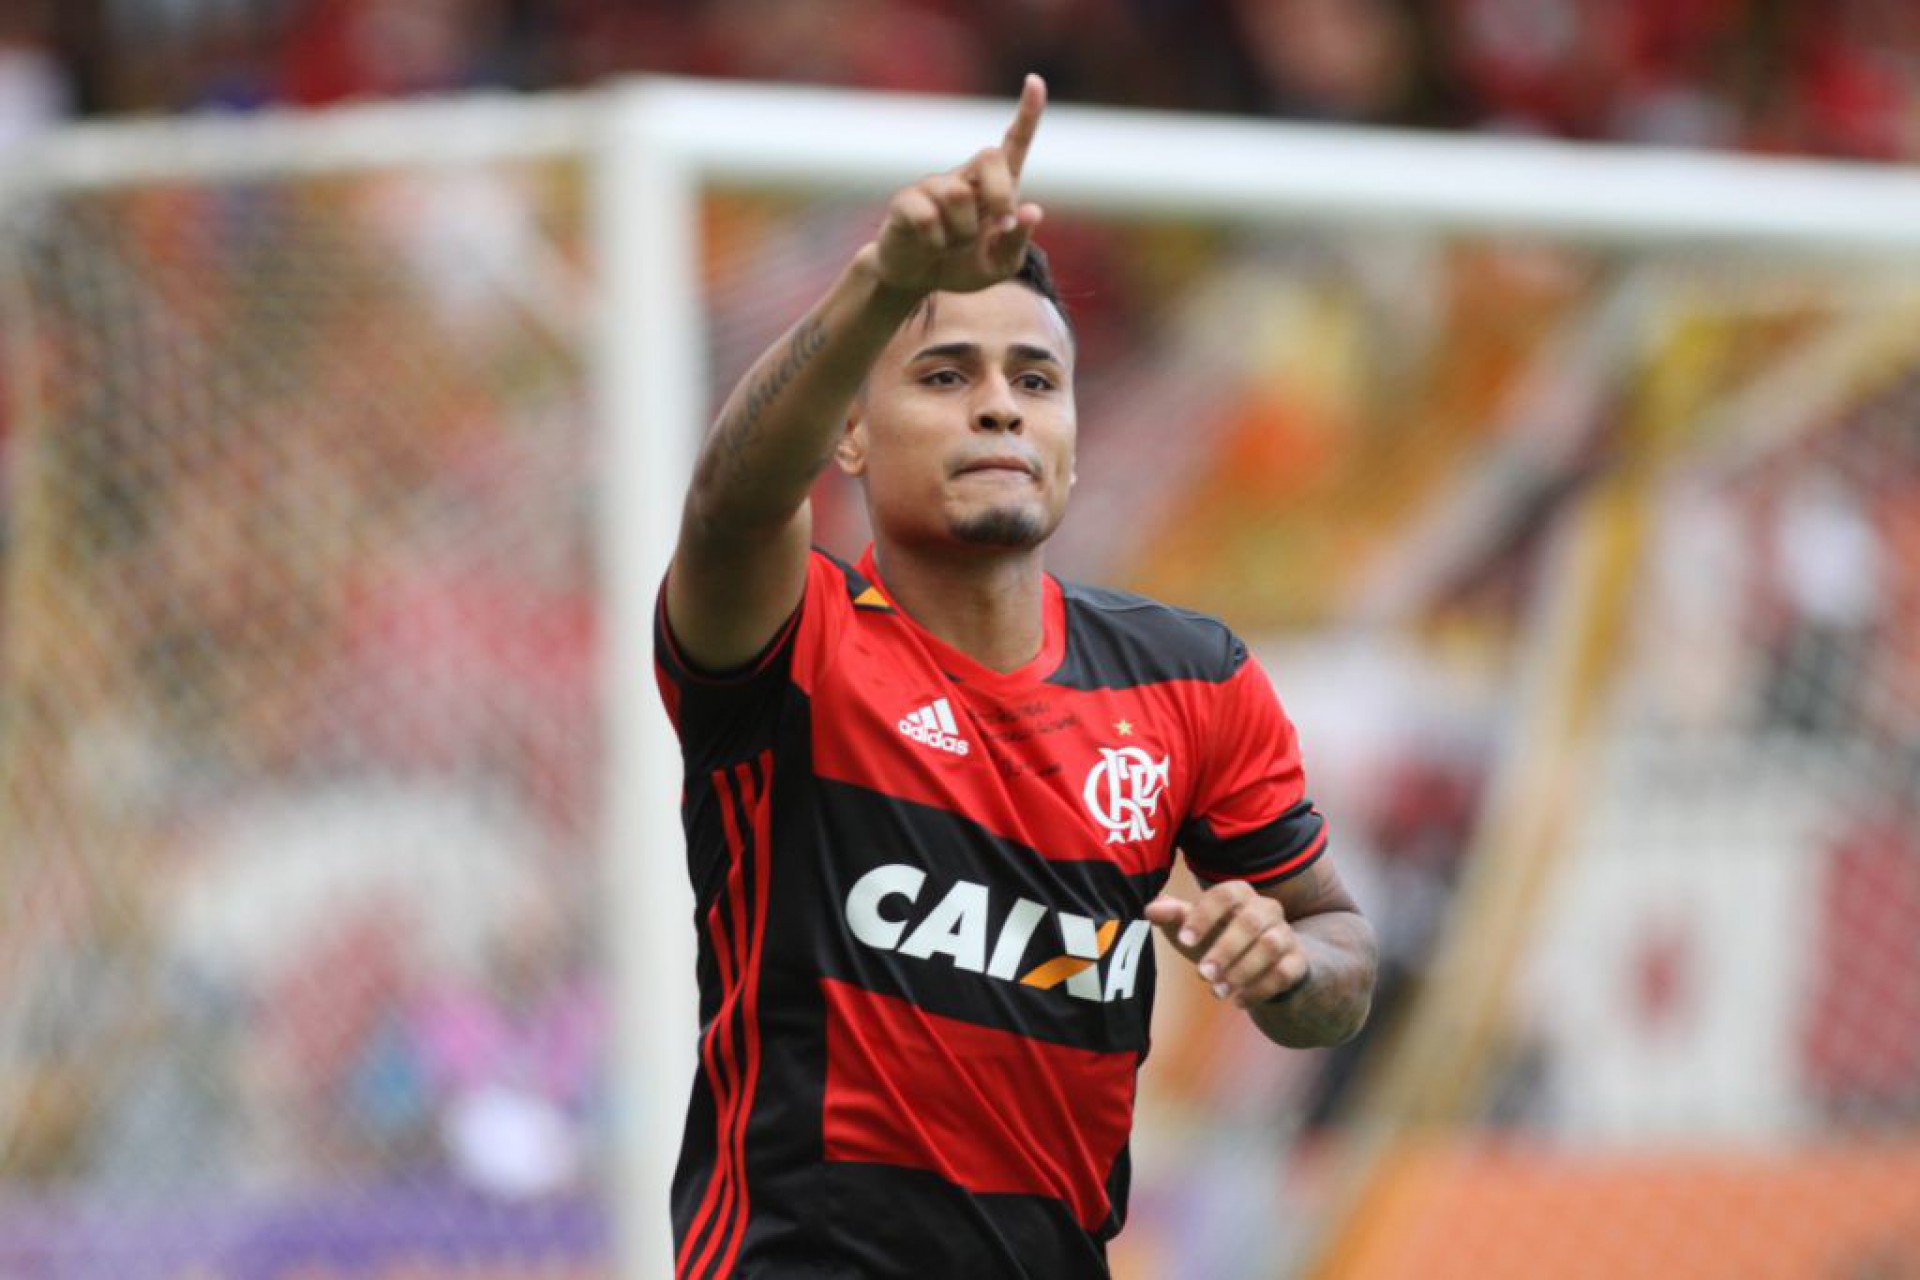 Atacante com passagens por Flamengo e Botafogo é anunciado por clube da Série A